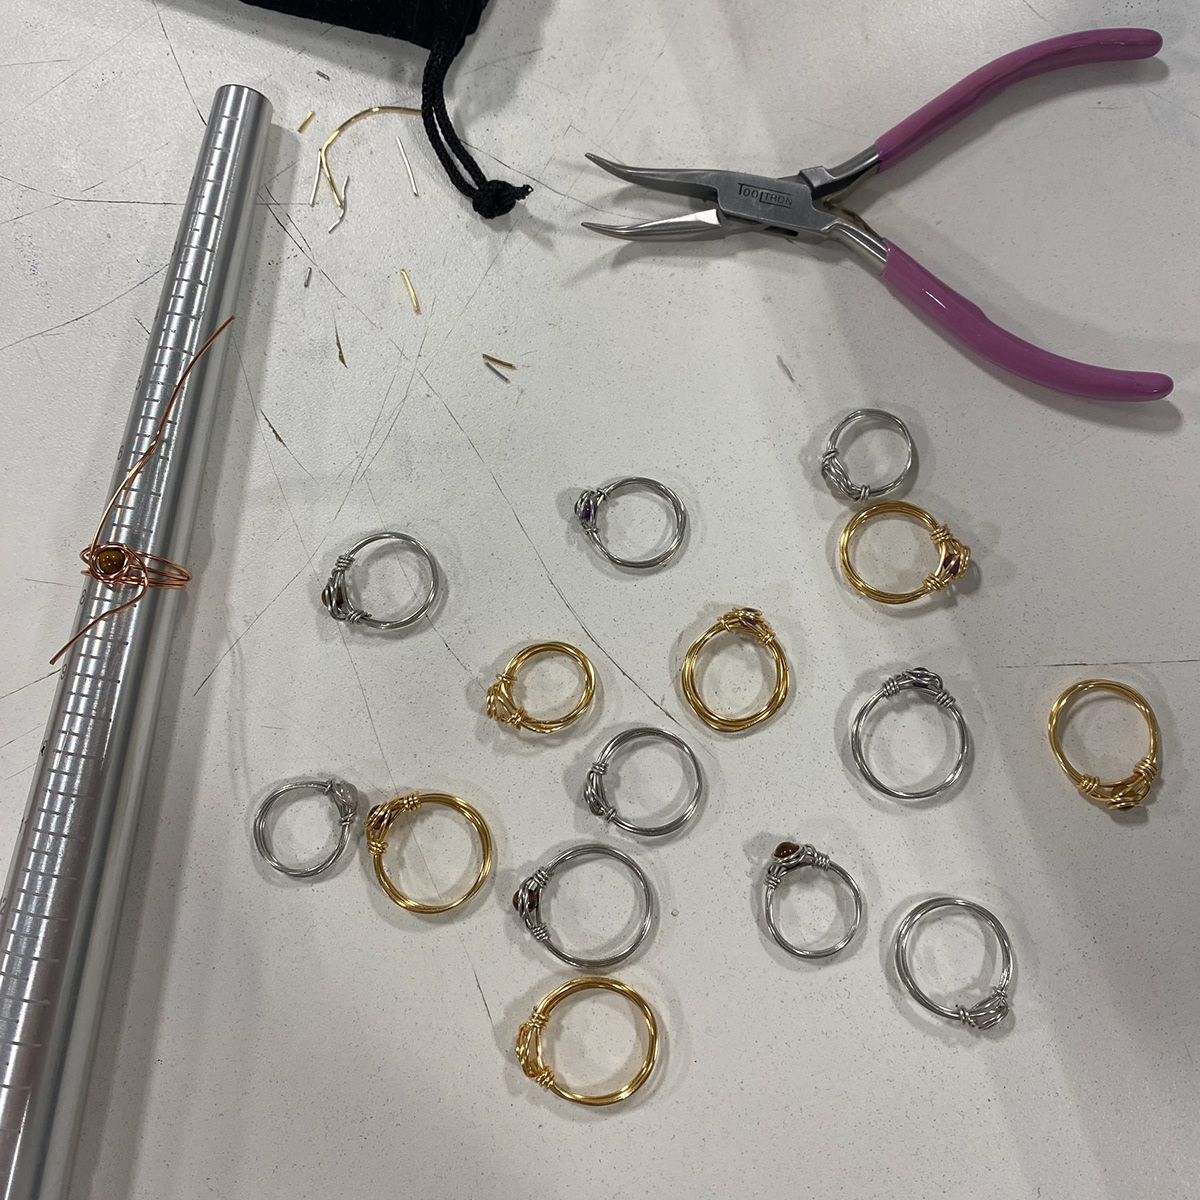 Handmade Jewelry handmade ring handmade rings jewelry rings Wire wrap wire wrapped jewelry wire wrapping